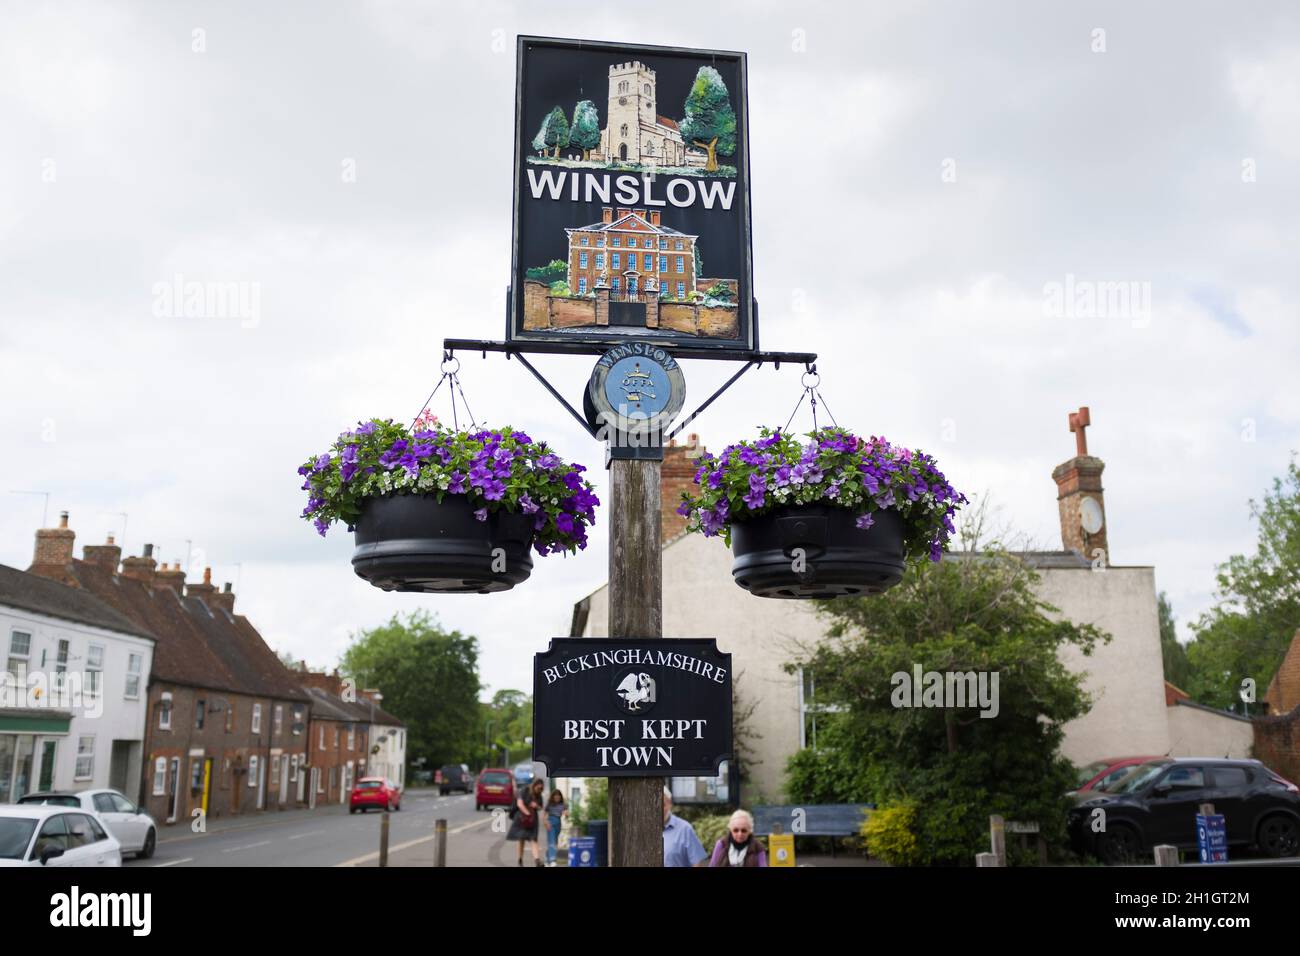 WINSLOW, Royaume-Uni - 25 juin 2021.Panneau de la ville traditionnelle du marché de Winslow, classé ville la mieux entretenue de Buckinghamshire.Meilleures villes rurales d'Angleterre, Banque D'Images